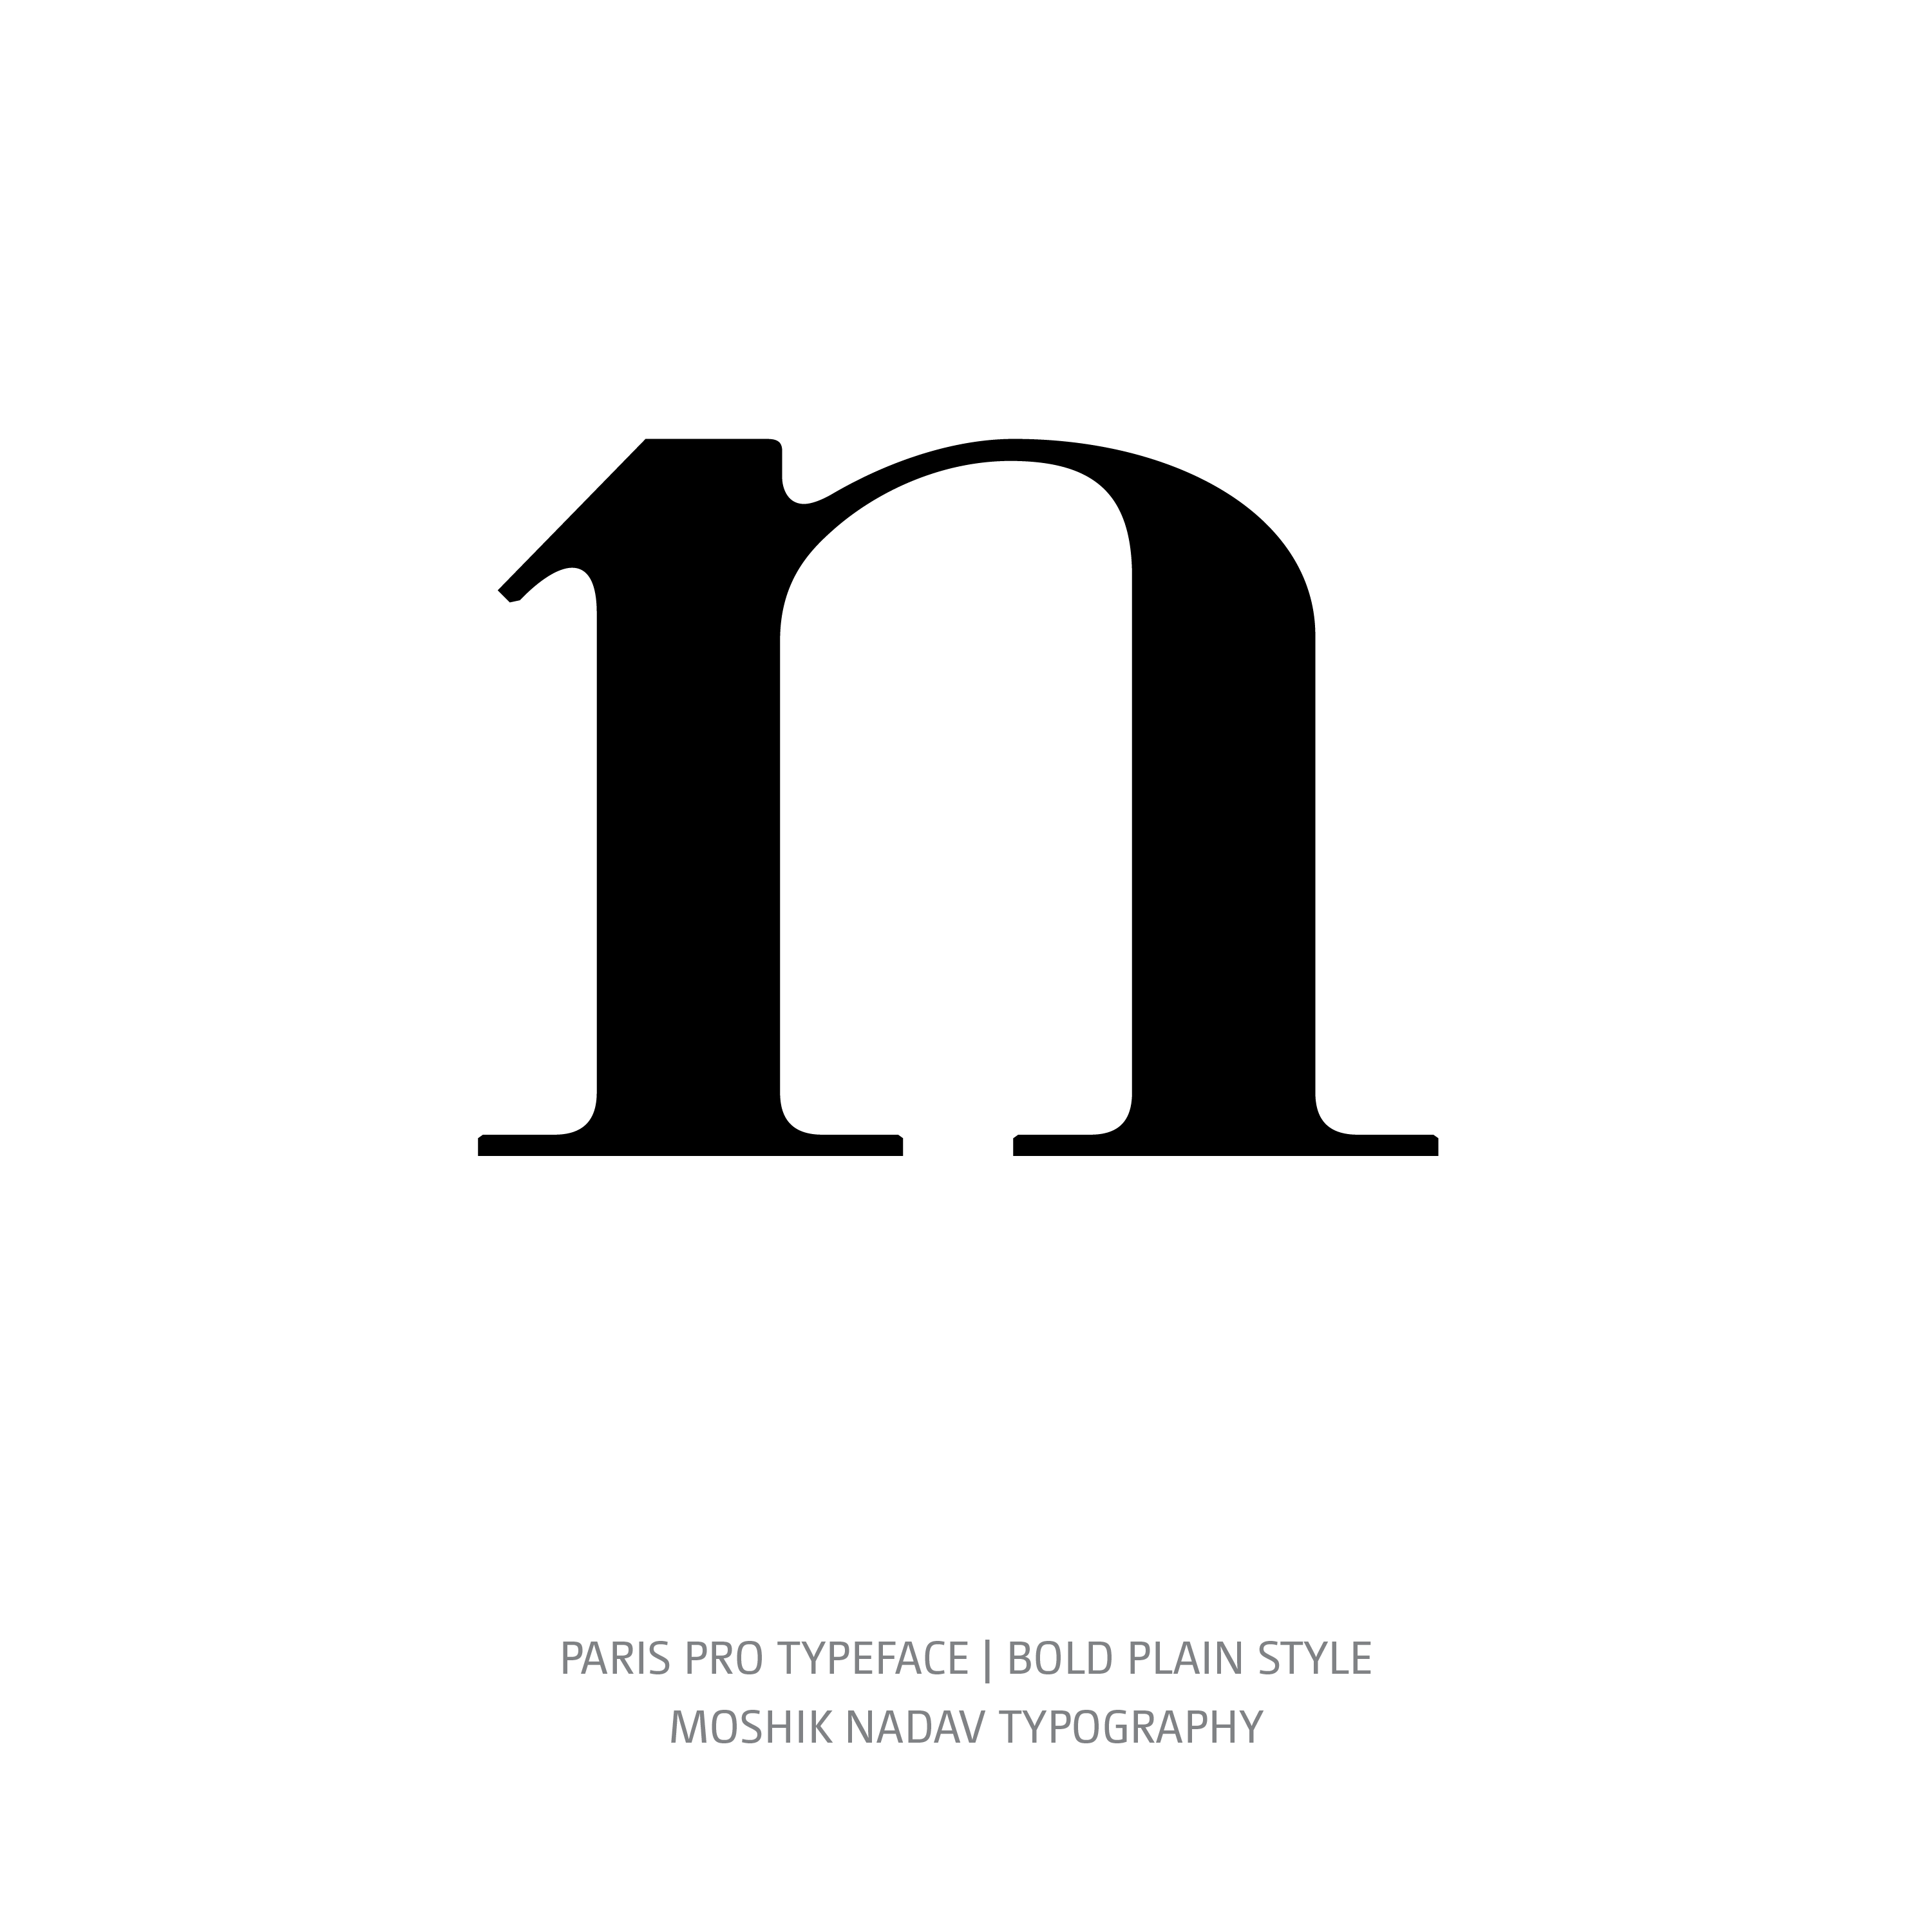 Paris Pro Typeface Bold Plain n